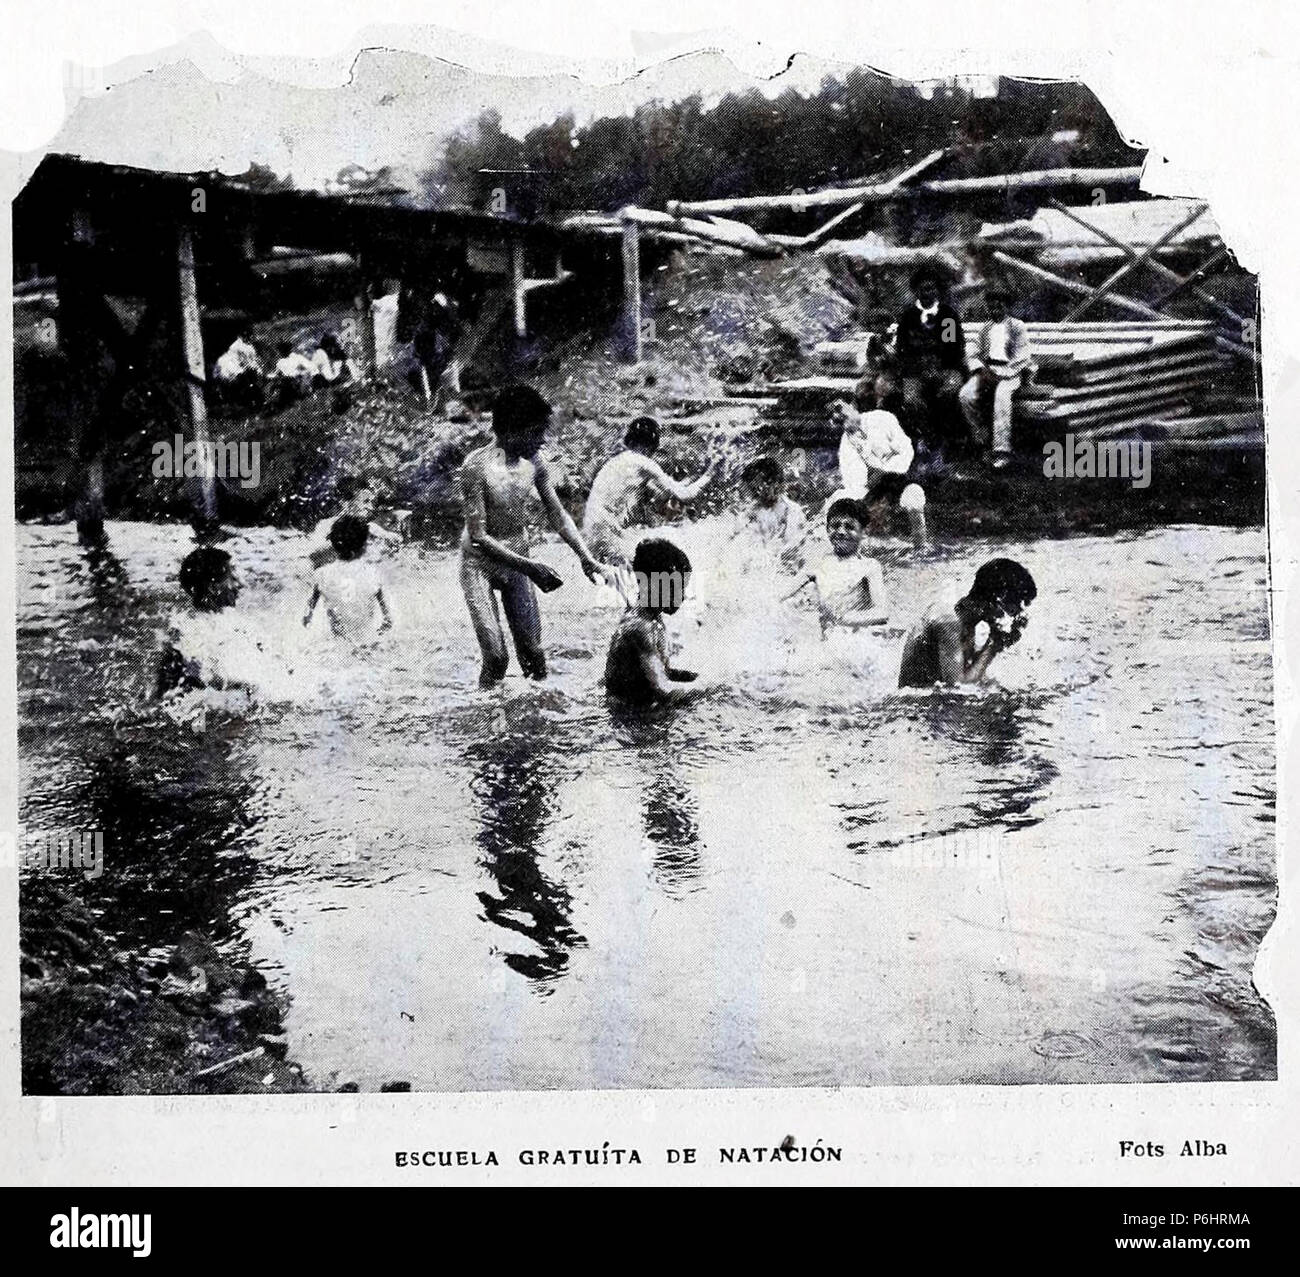 1908-08-15, Blanco y Negro, Escuela gratuita de natación 02, Alba. Foto Stock